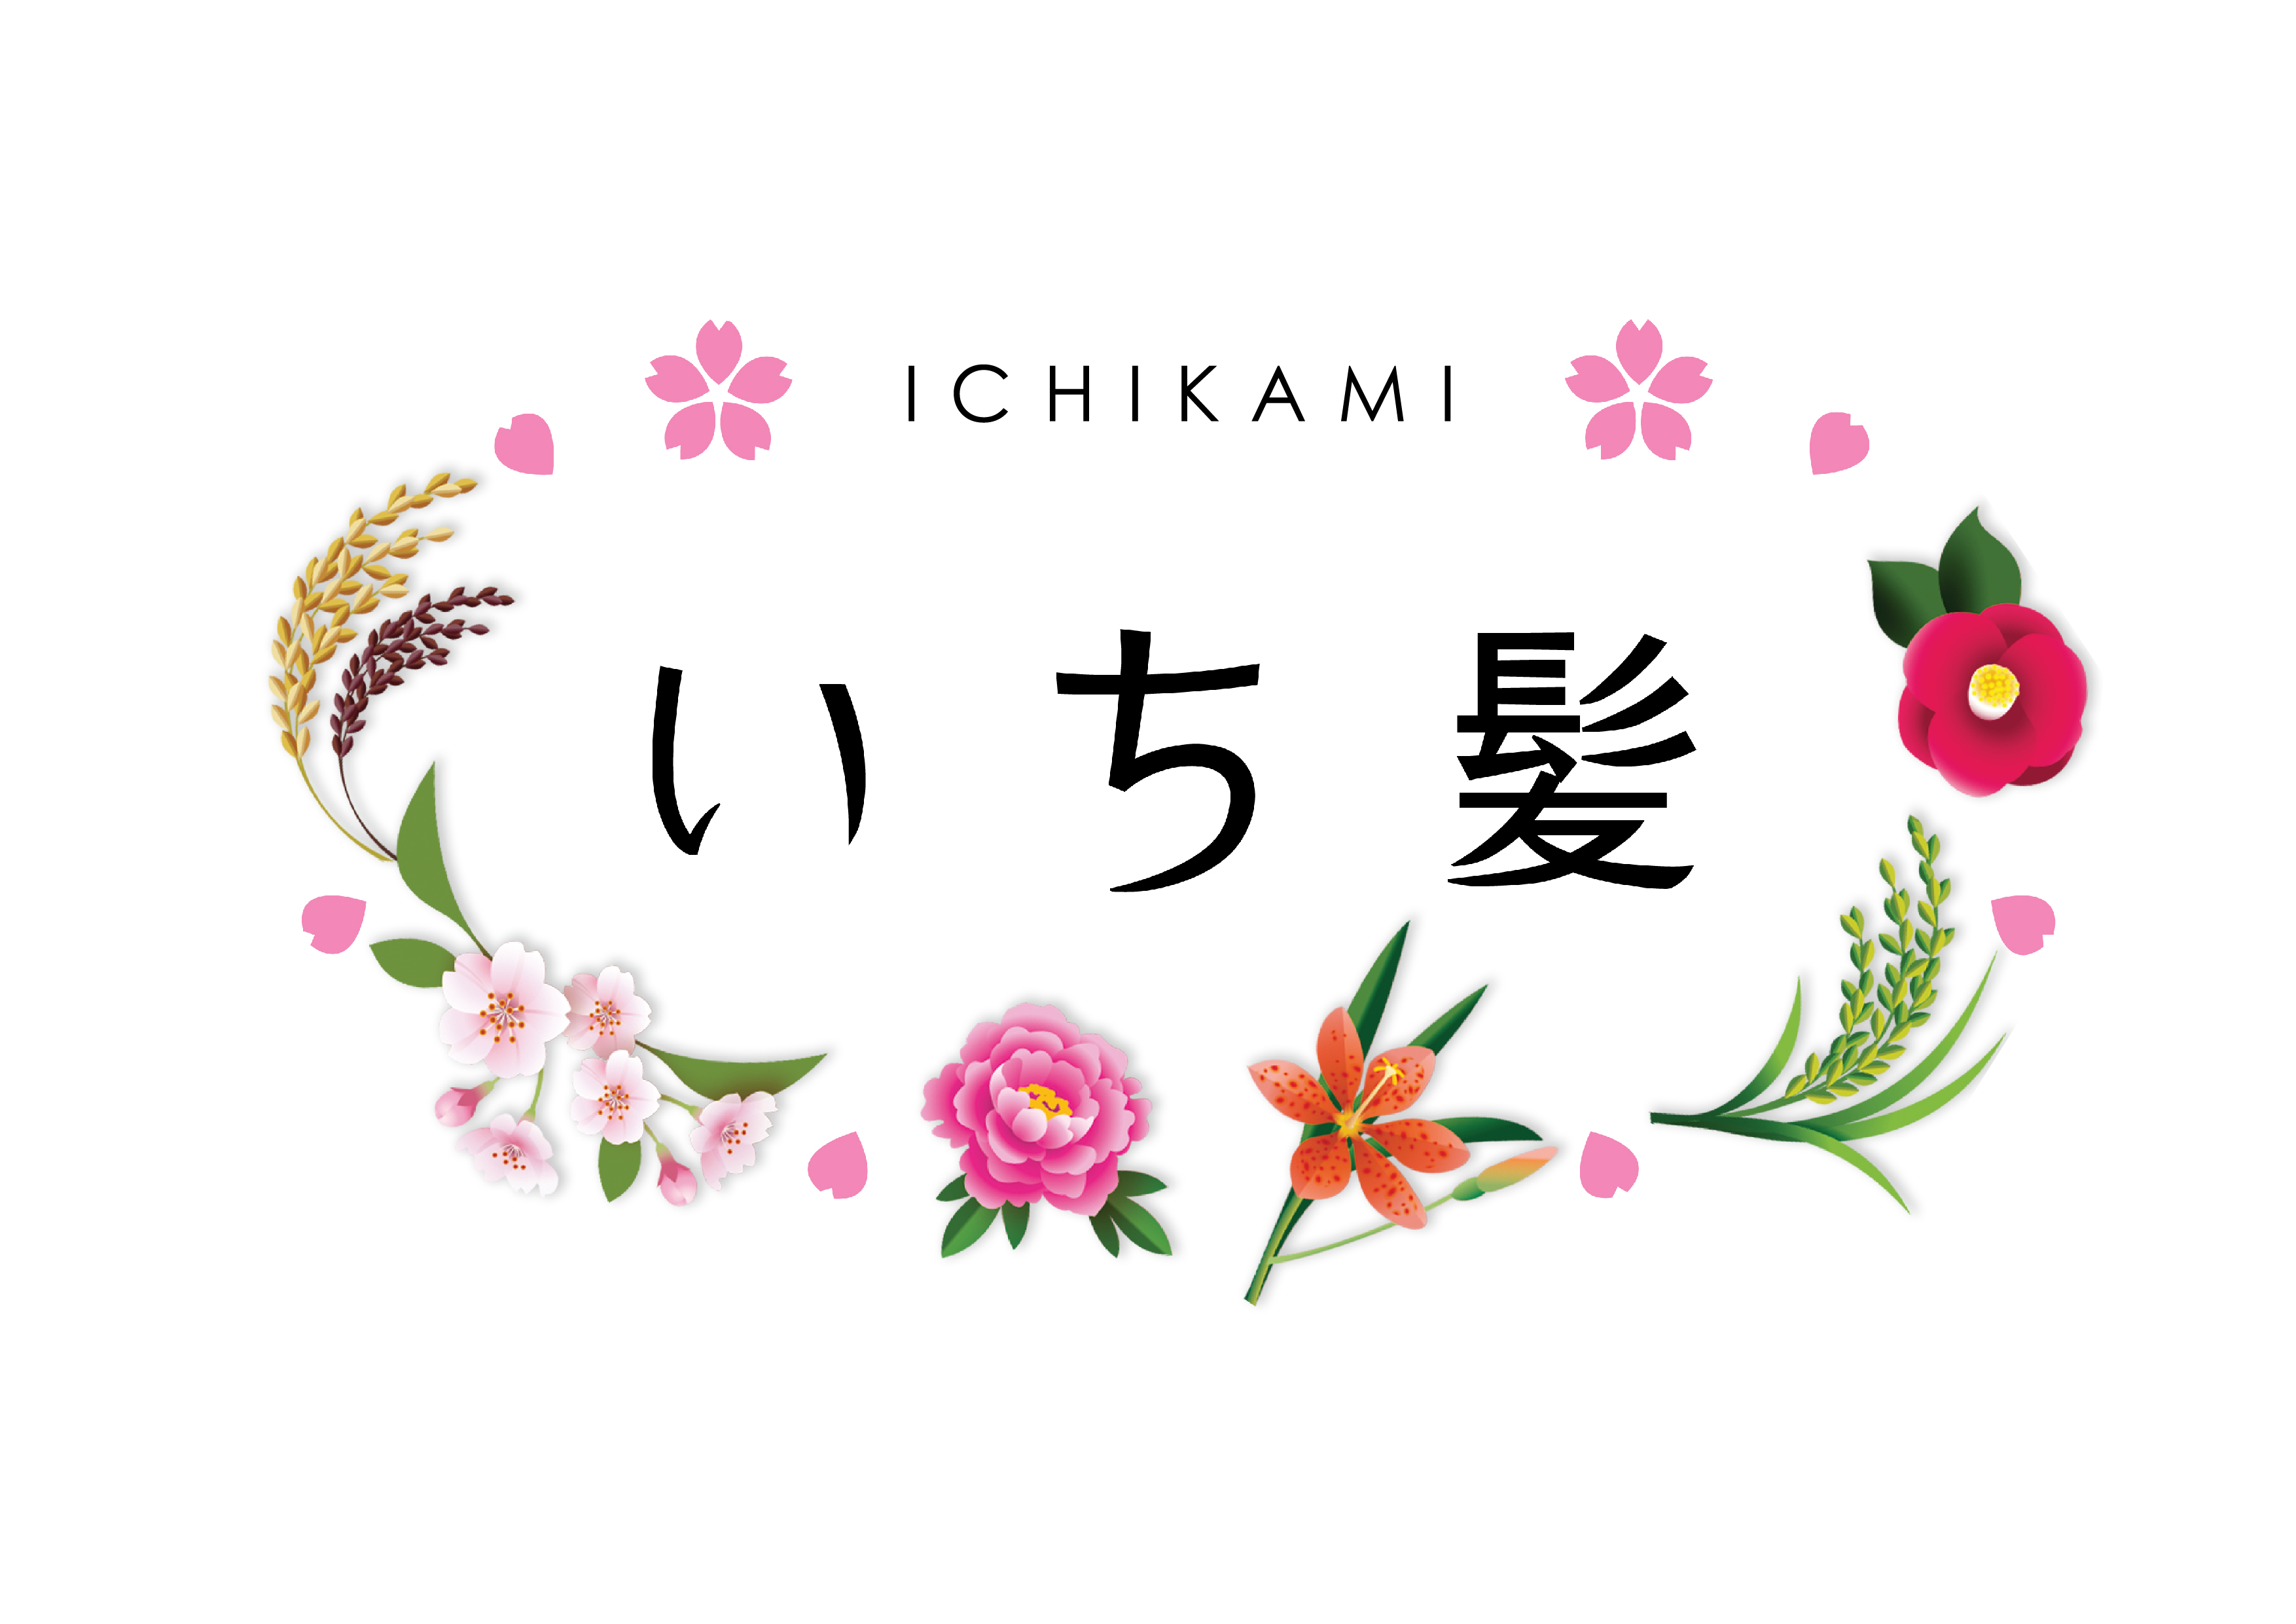 Ichikami